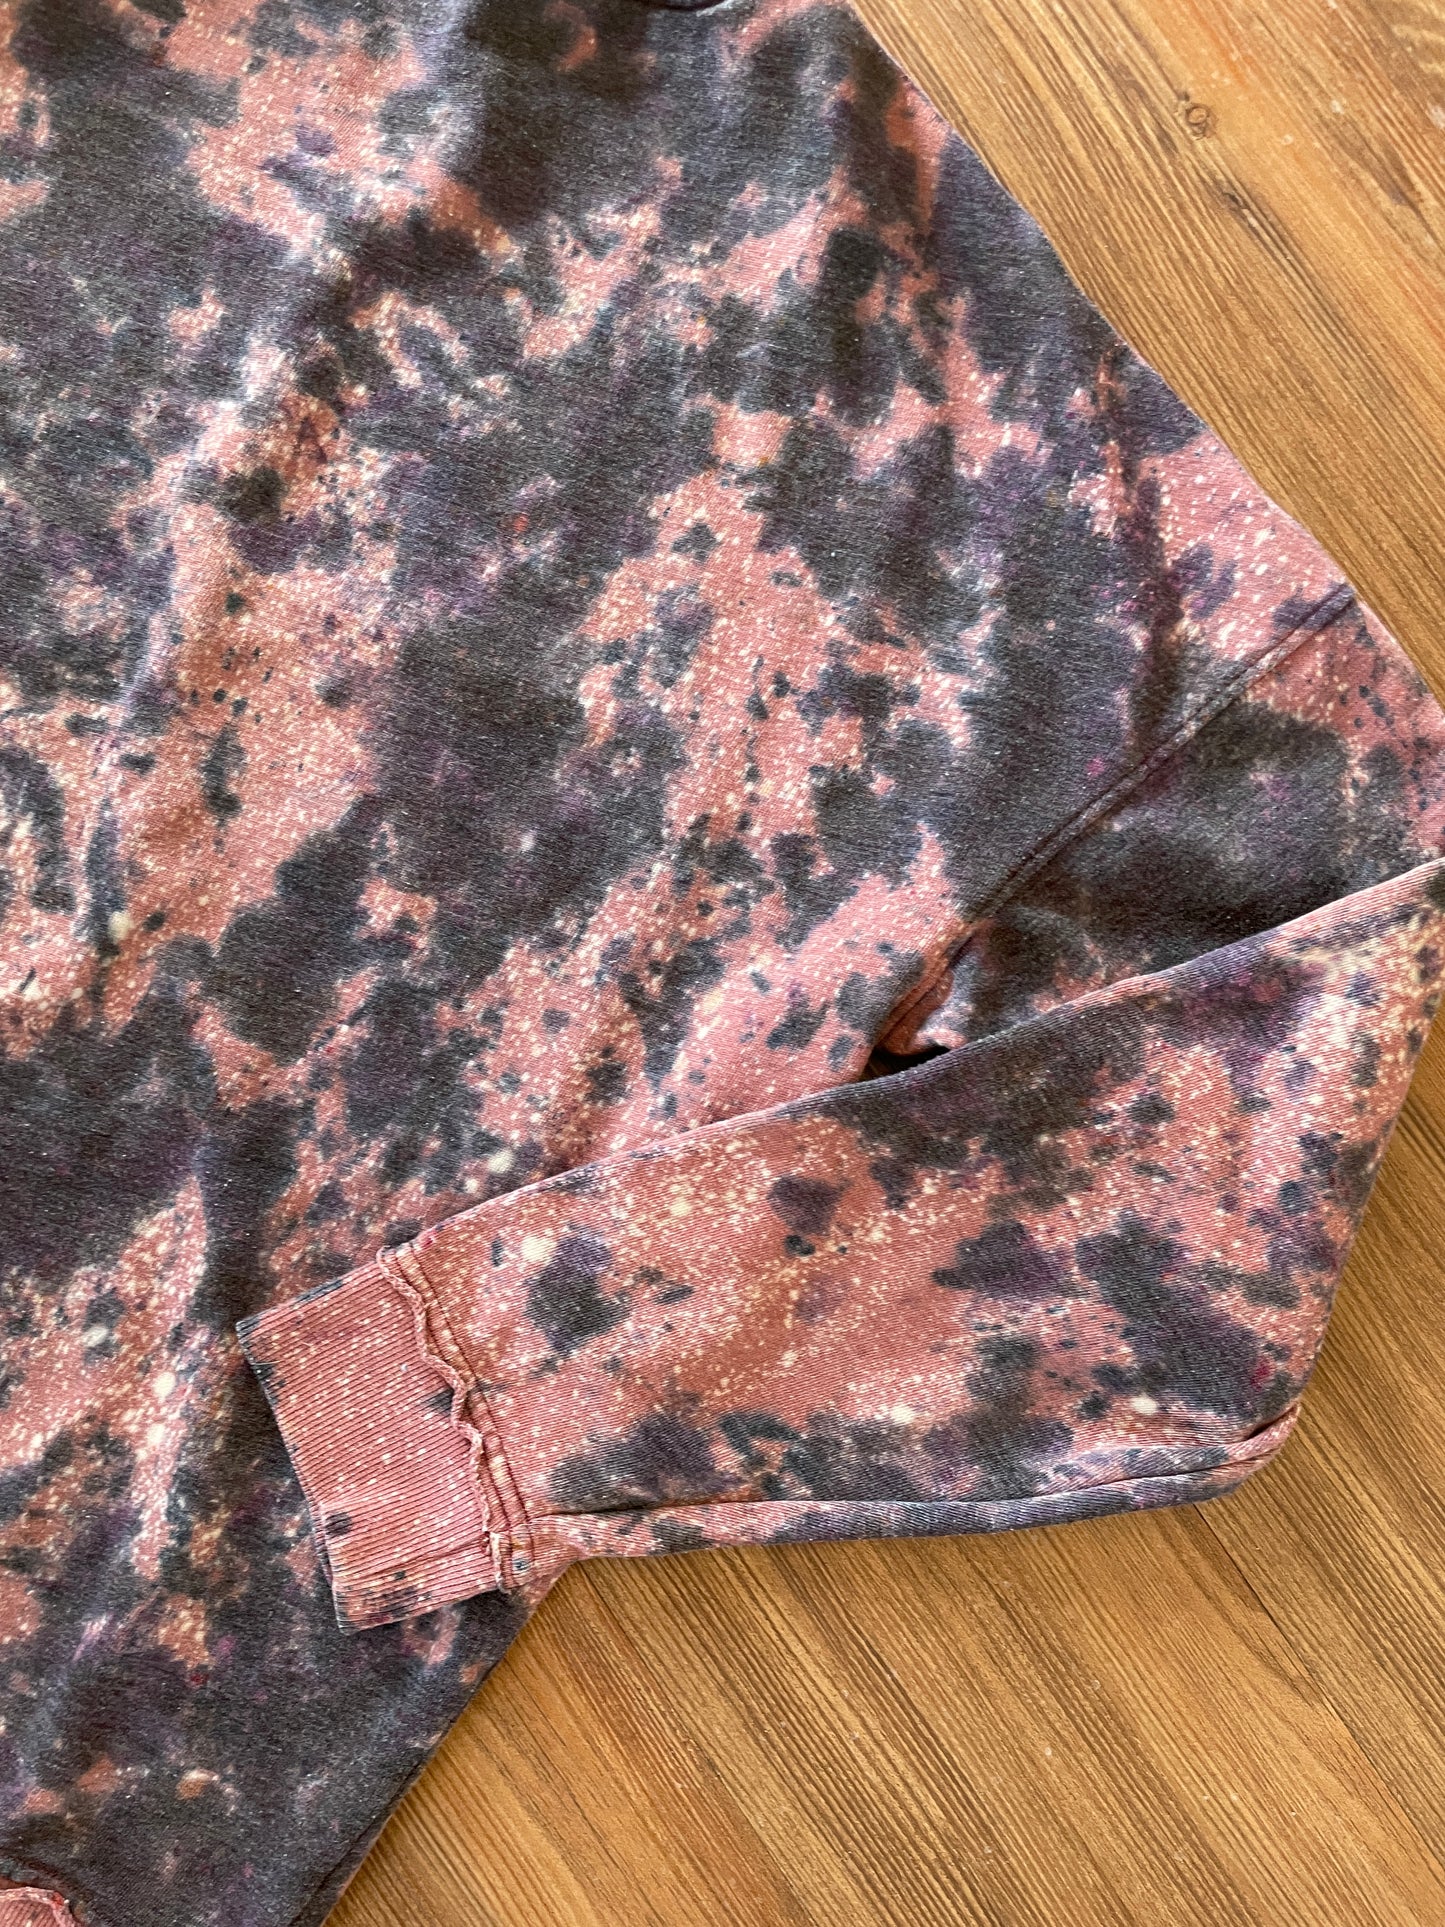 XL Men’s Utah Handmade Earth Tones Tie Dye Sweatshirt | Pink, Black, and Pink Tie Dye Long Sleeve Sweater